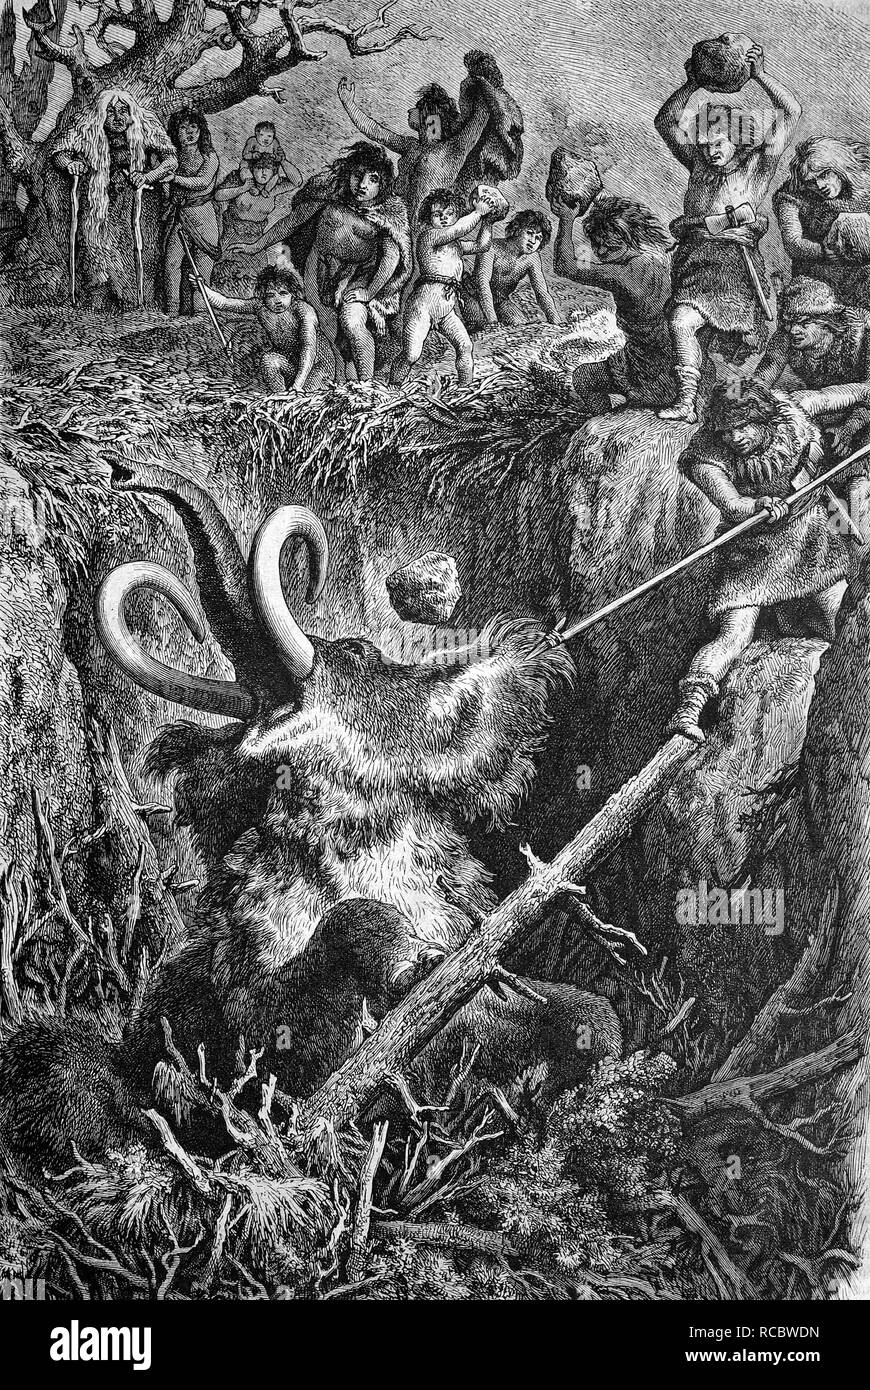 La chasse de l'homme des cavernes, un mammouth de 1883 gravure historique Banque D'Images